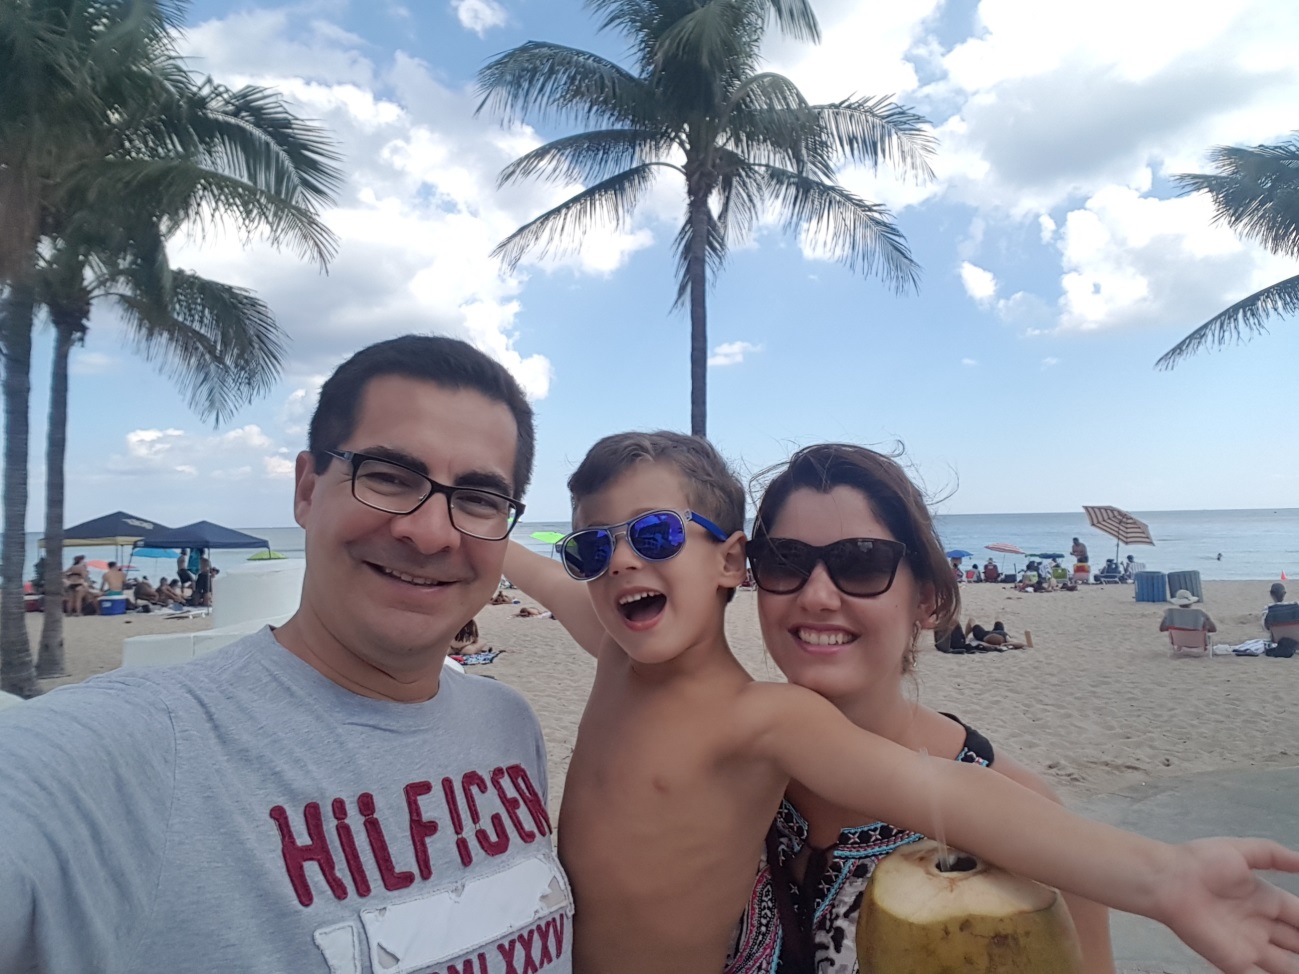 José Eduardo, seu filho de 4 anos e a esposa Danielle estão em uma selfie cujo fundo é uma praia. O céu está azul e Danielle segura uma água de coco. O filho do casal está no colo de José e posa para foto de braços abertos. 